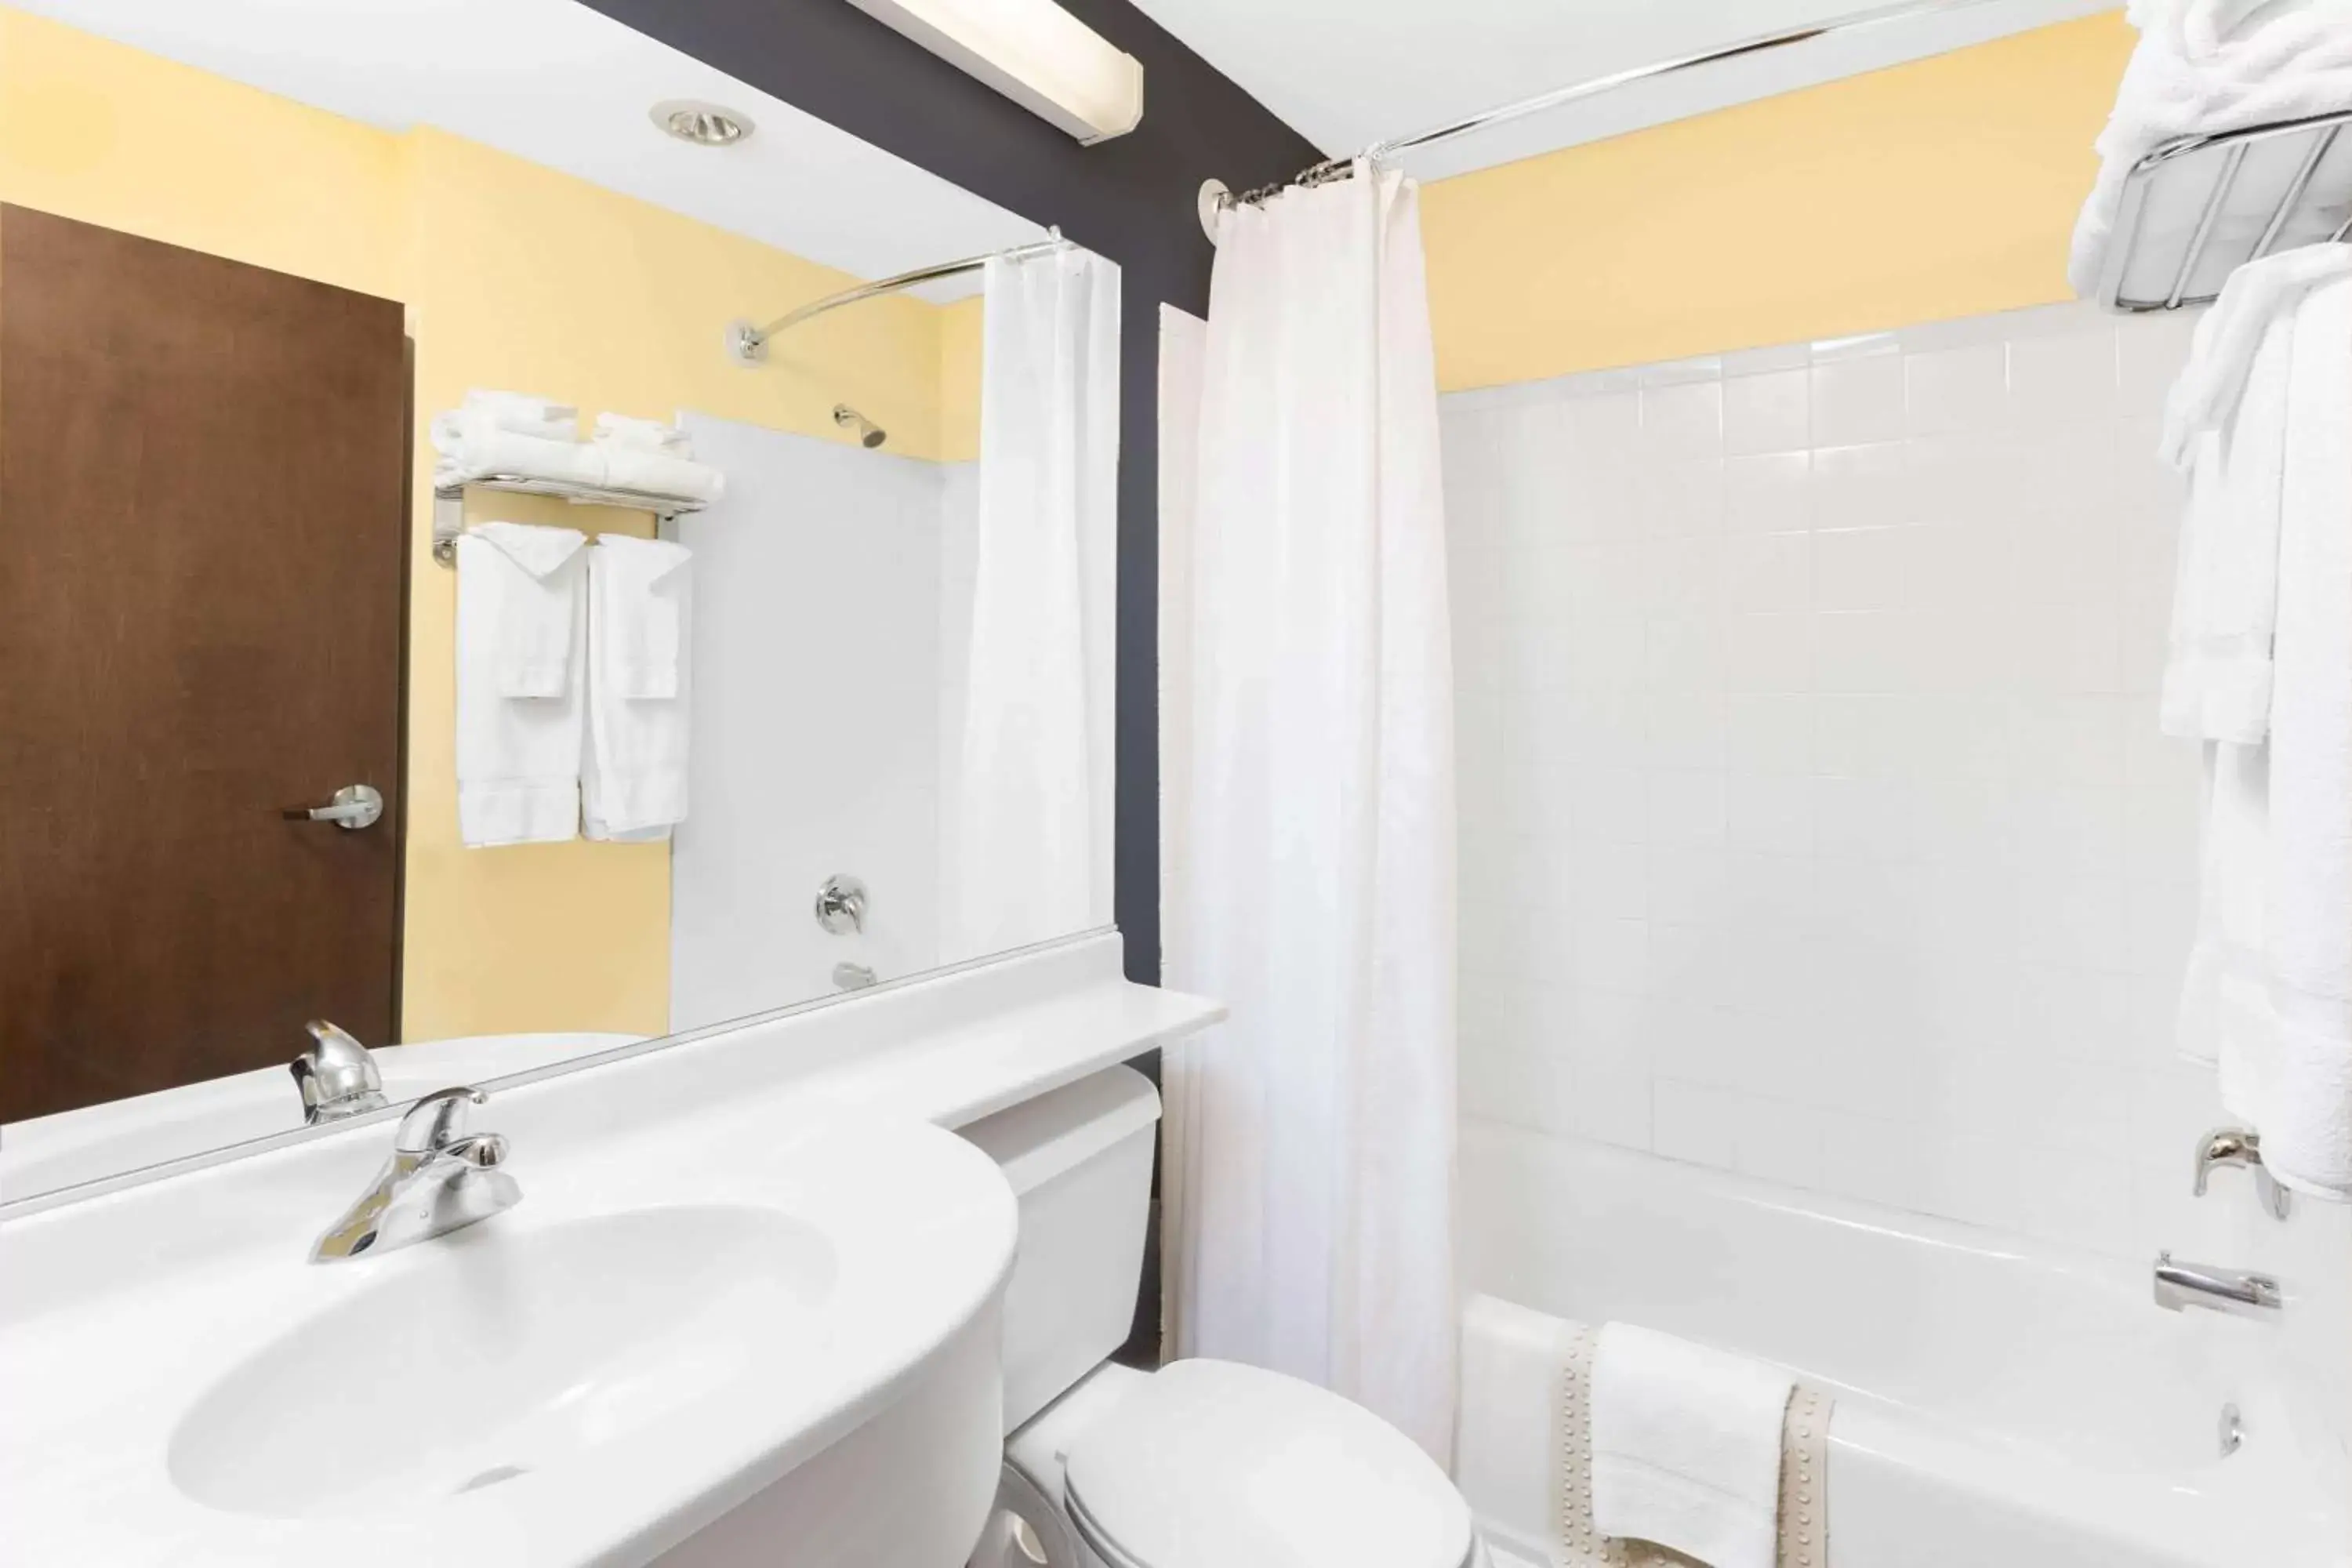 Bathroom in Microtel Inn & Suites - Kearney